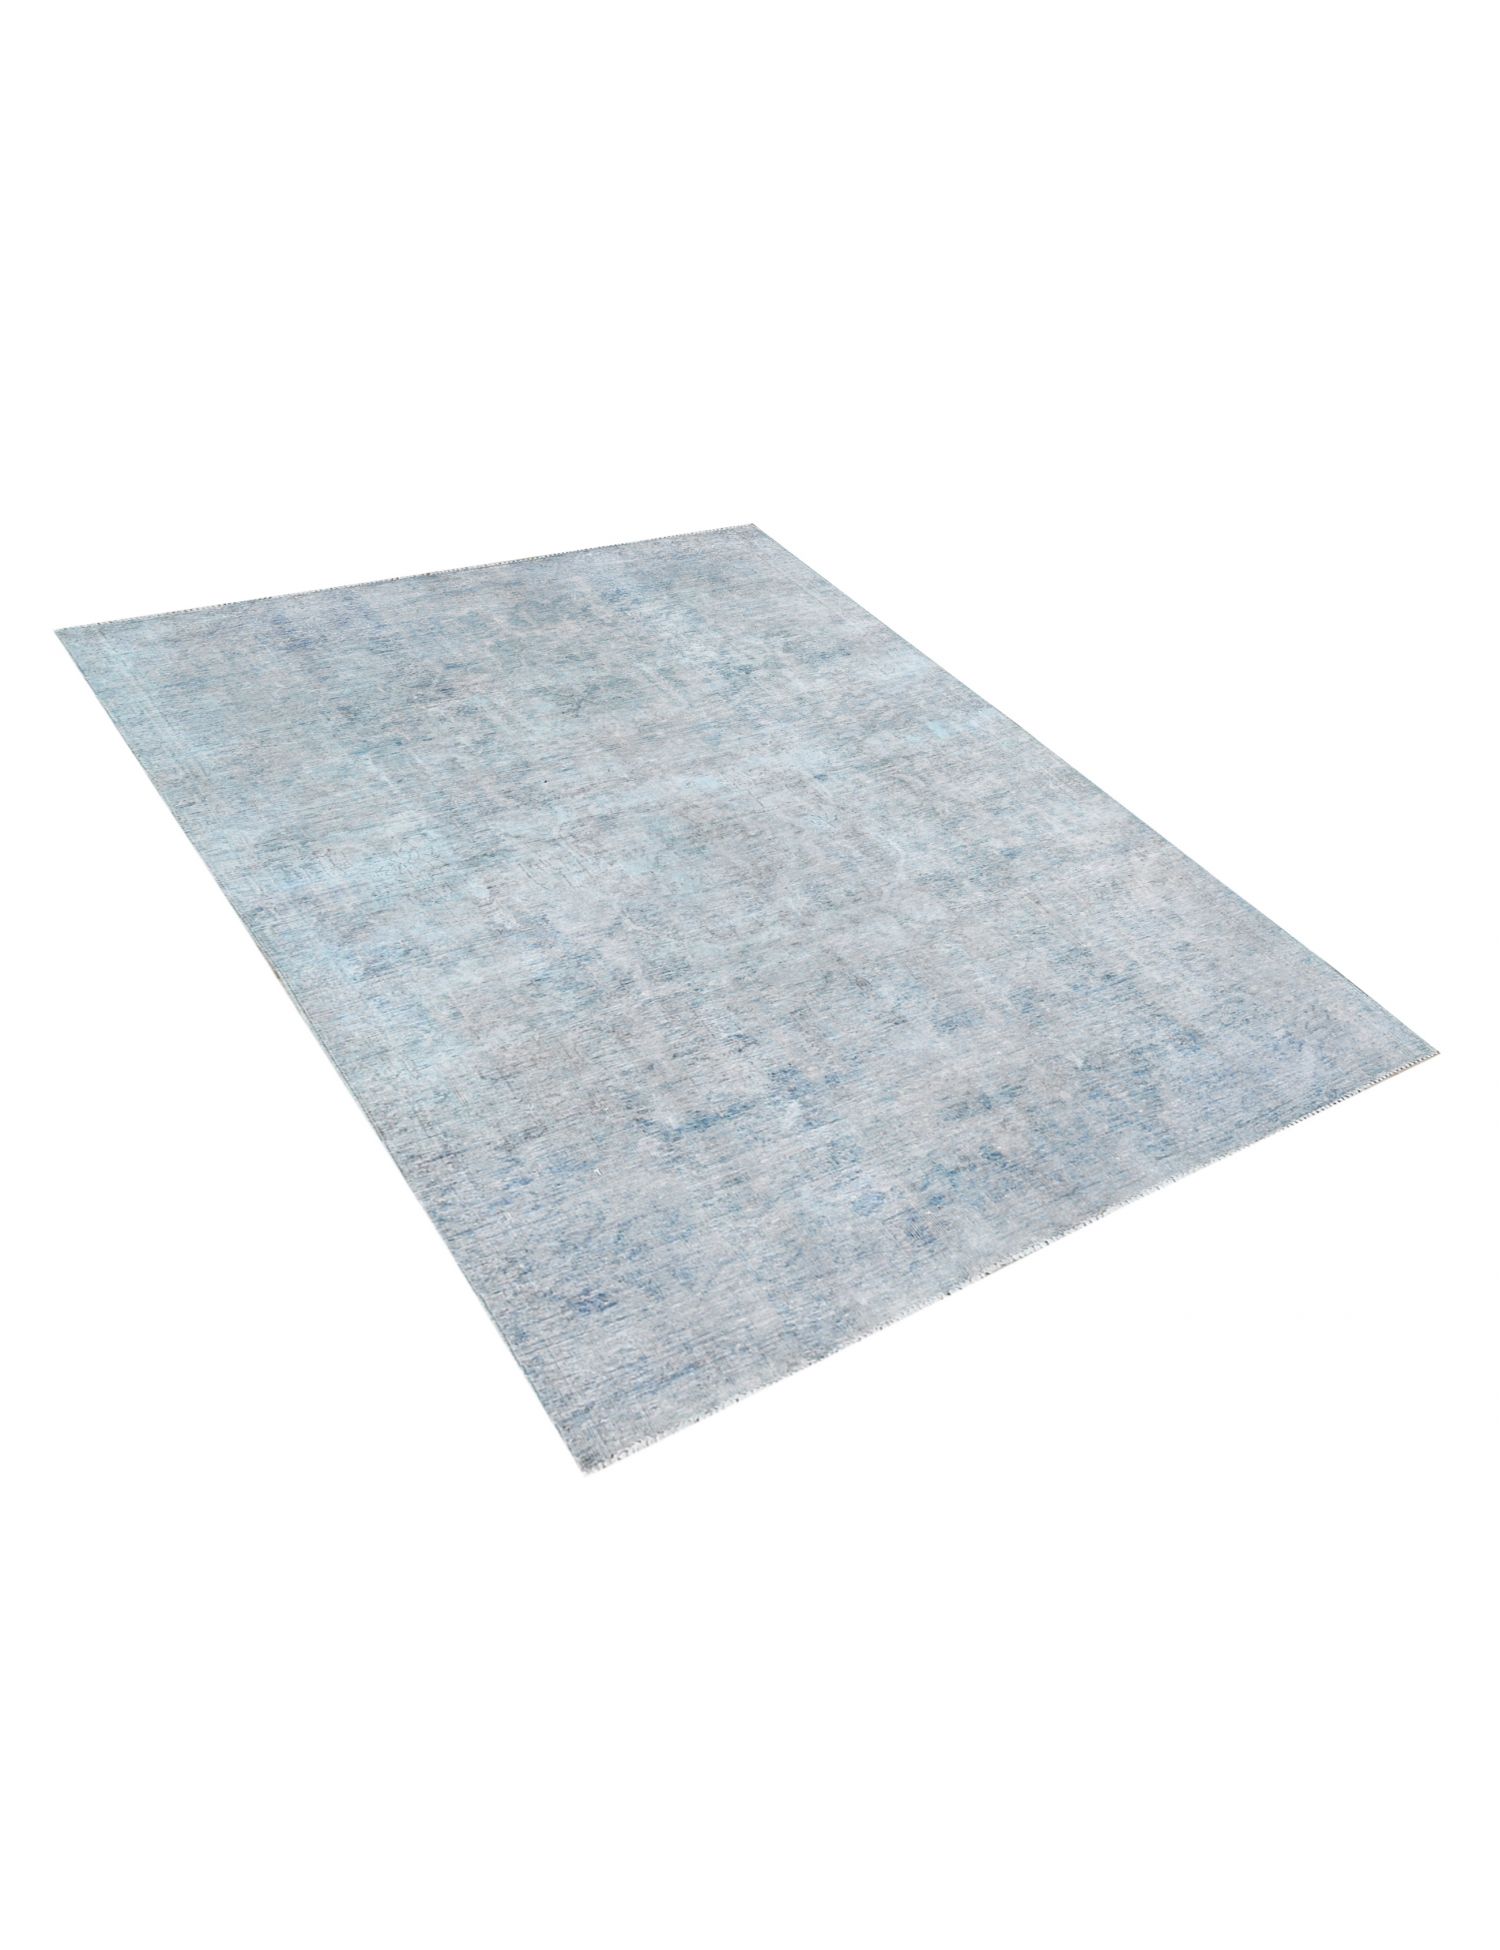 Persischer vintage teppich  blau <br/>248 x 172 cm